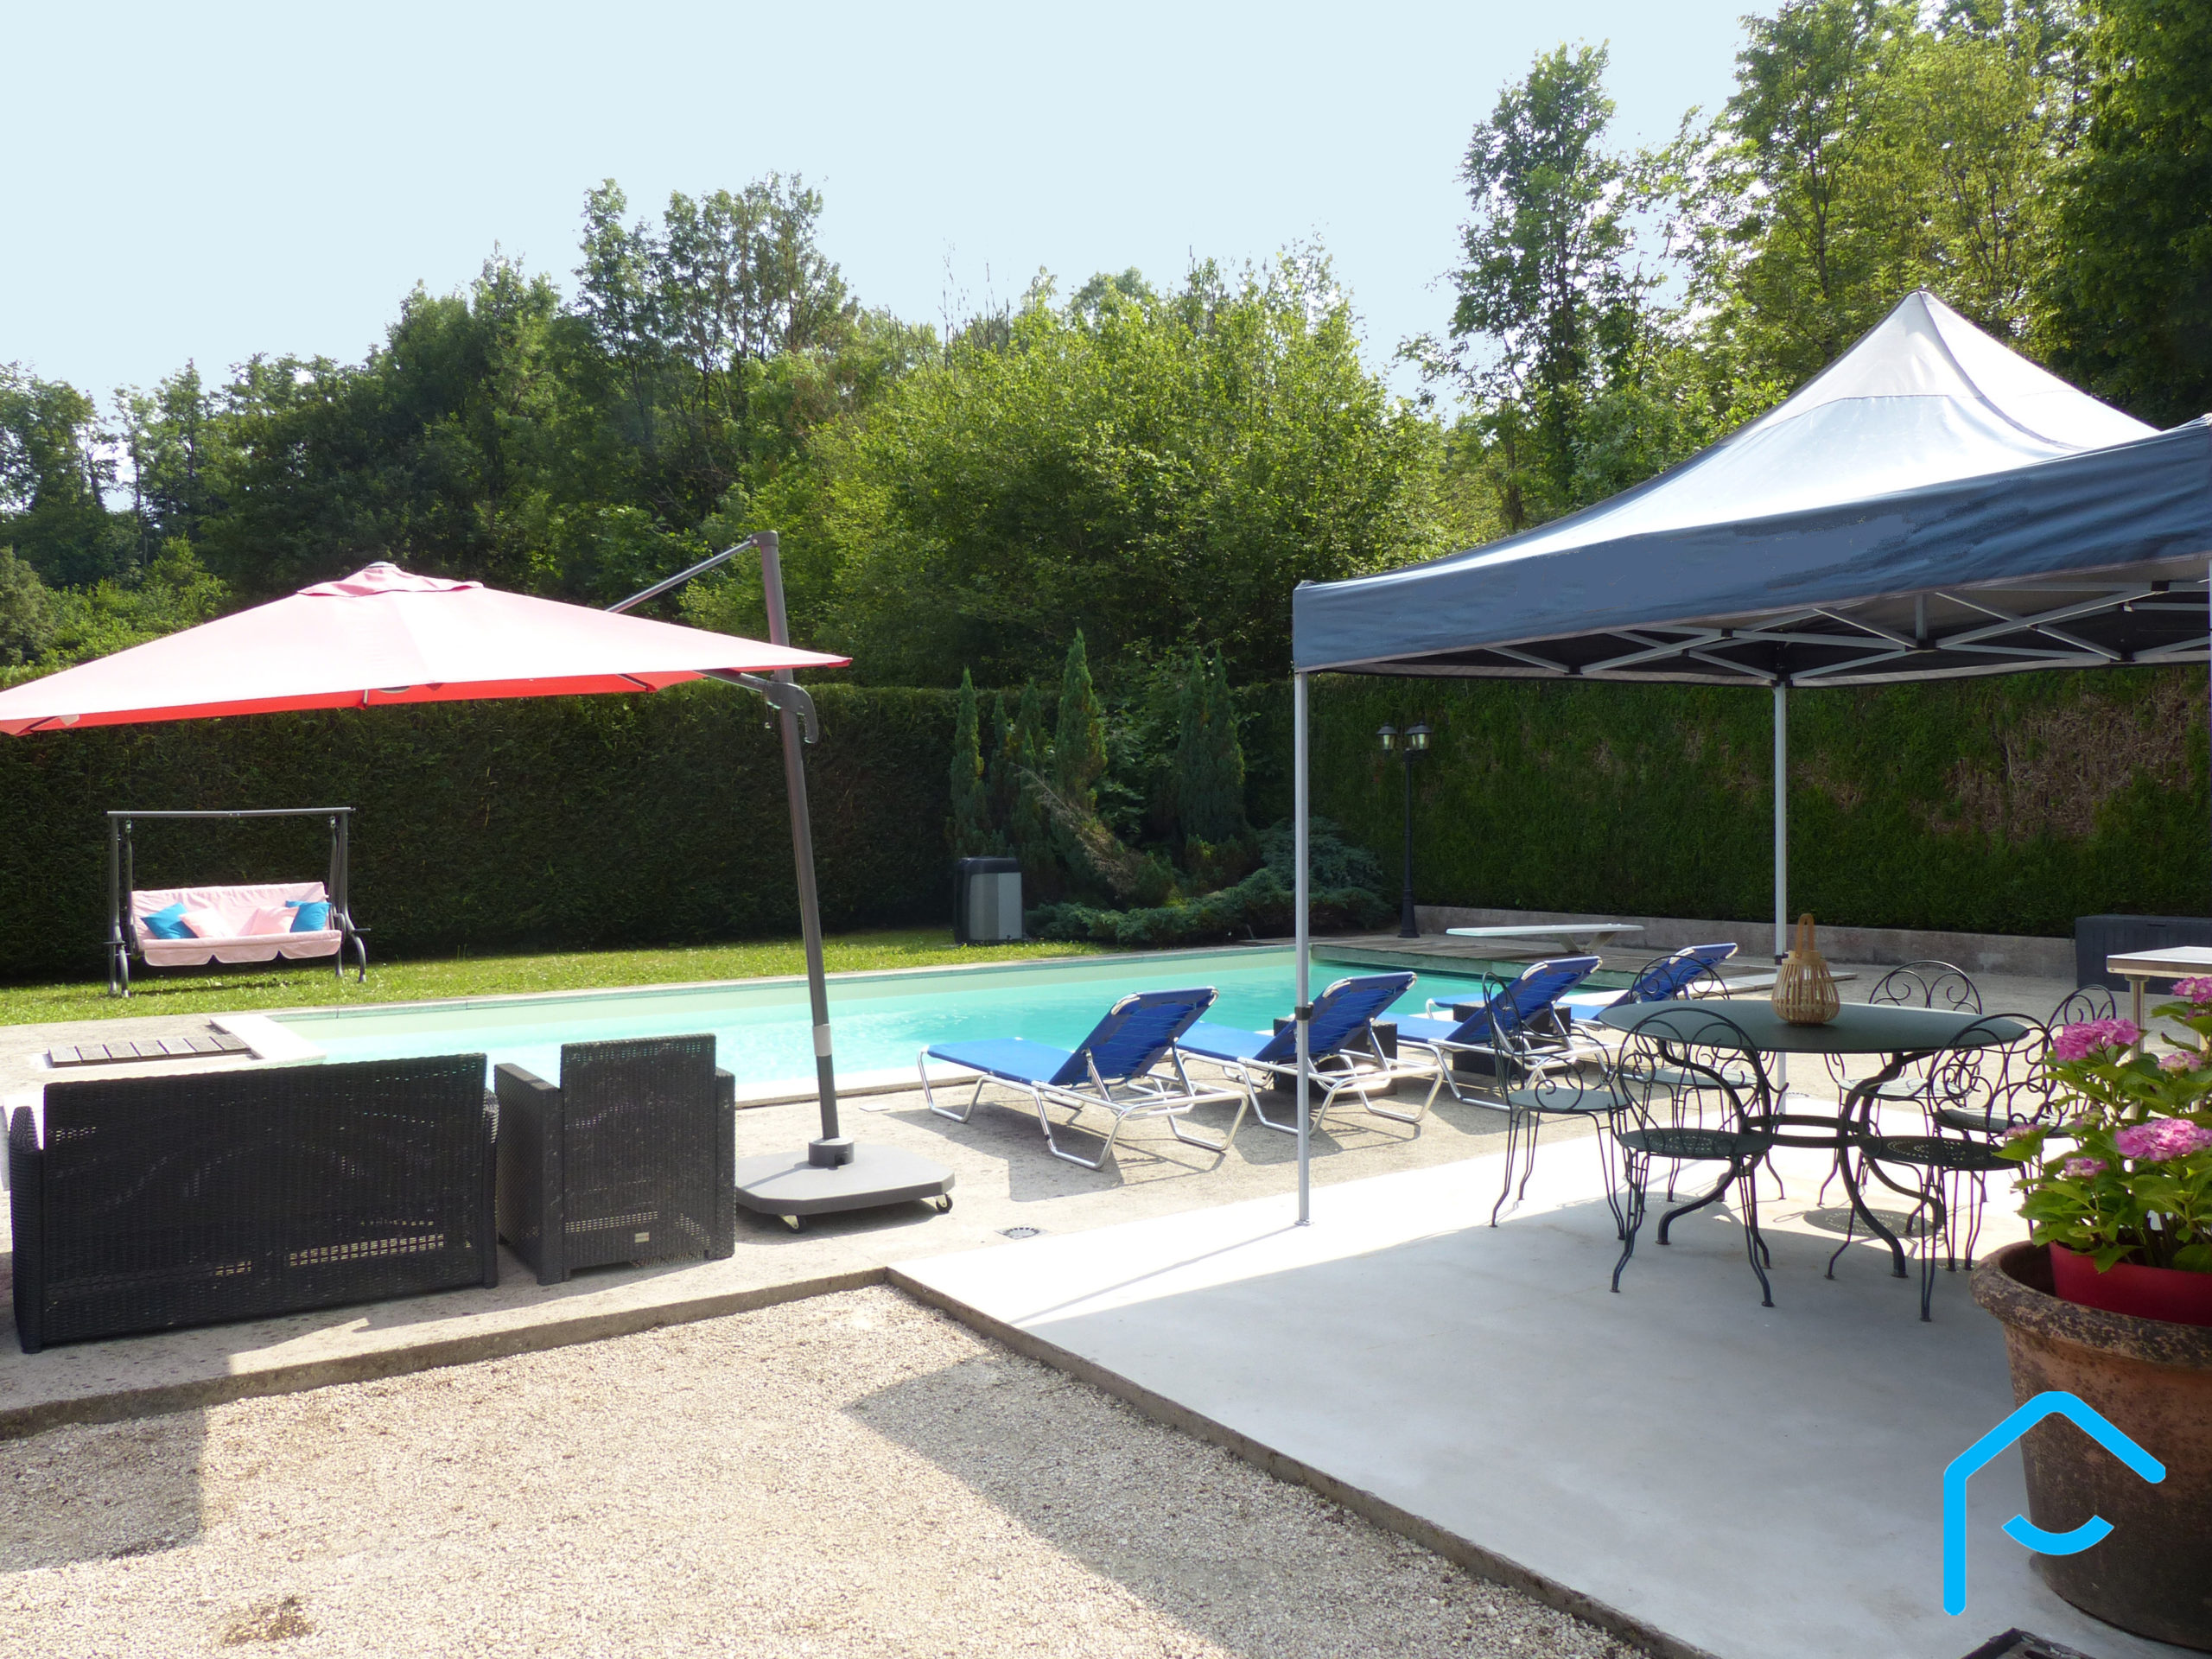 A vendre Savoie maison avec piscine terrain lac Aiguebelette vue 2